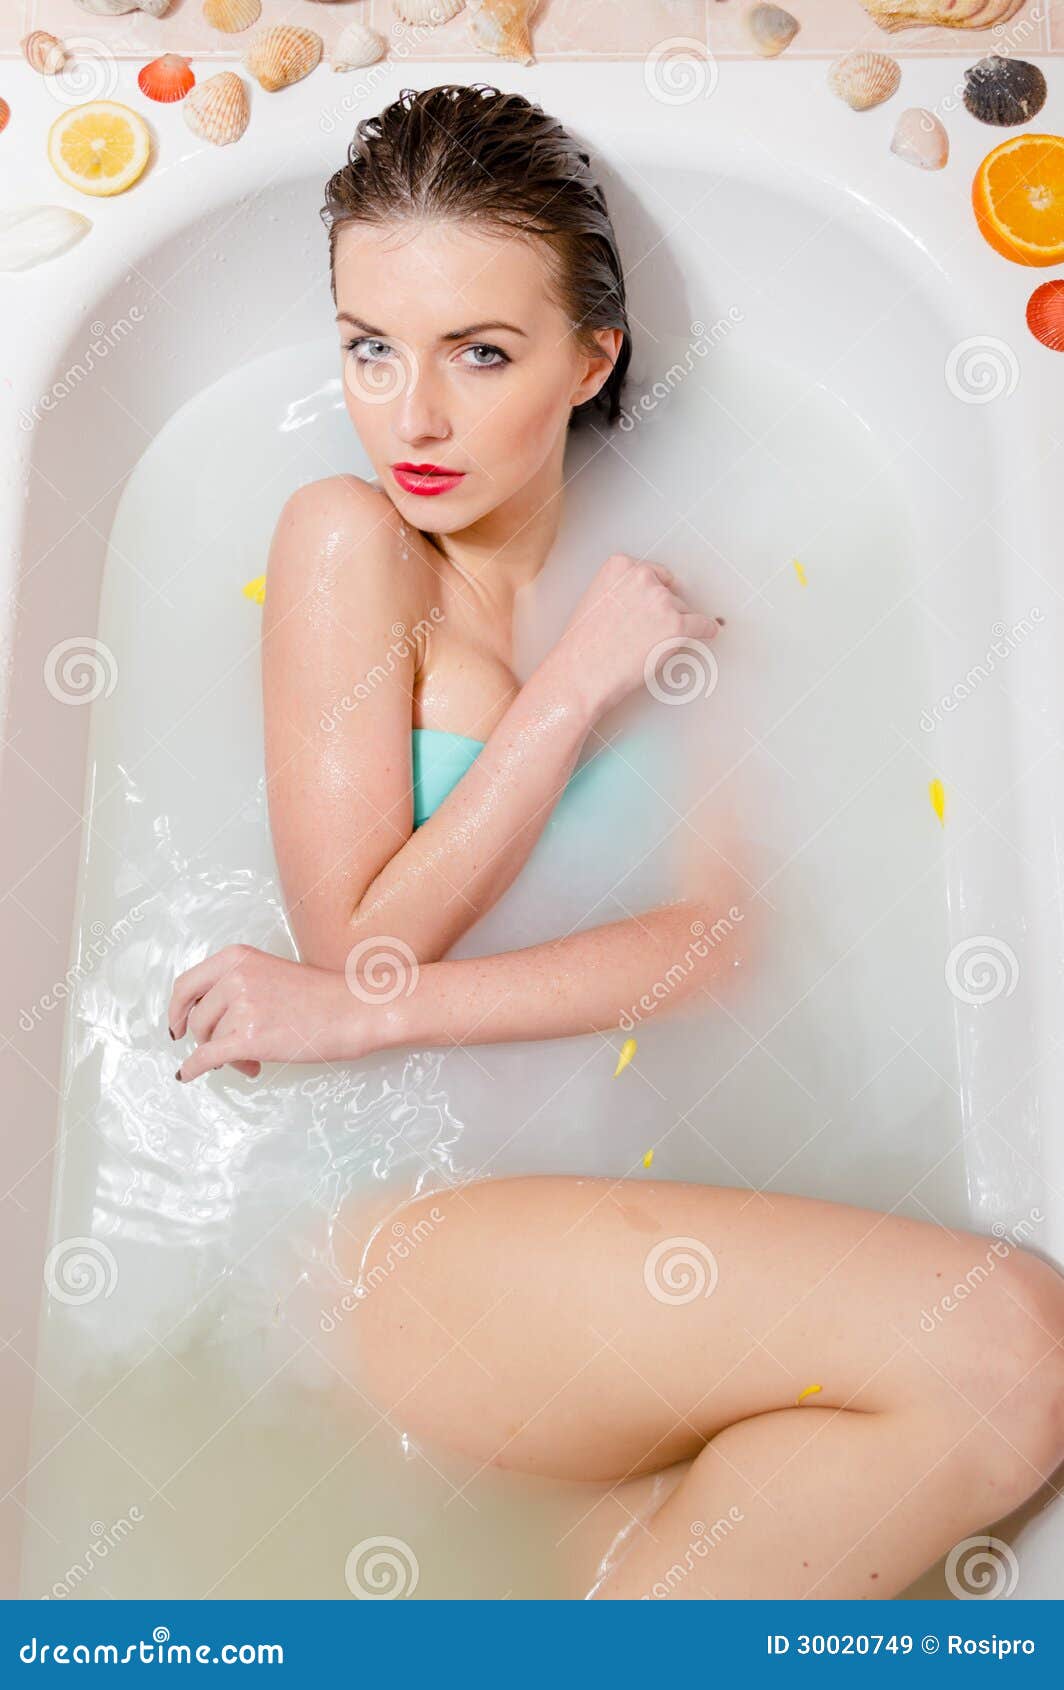 Sexy Older Woman Bath Time Pics 67